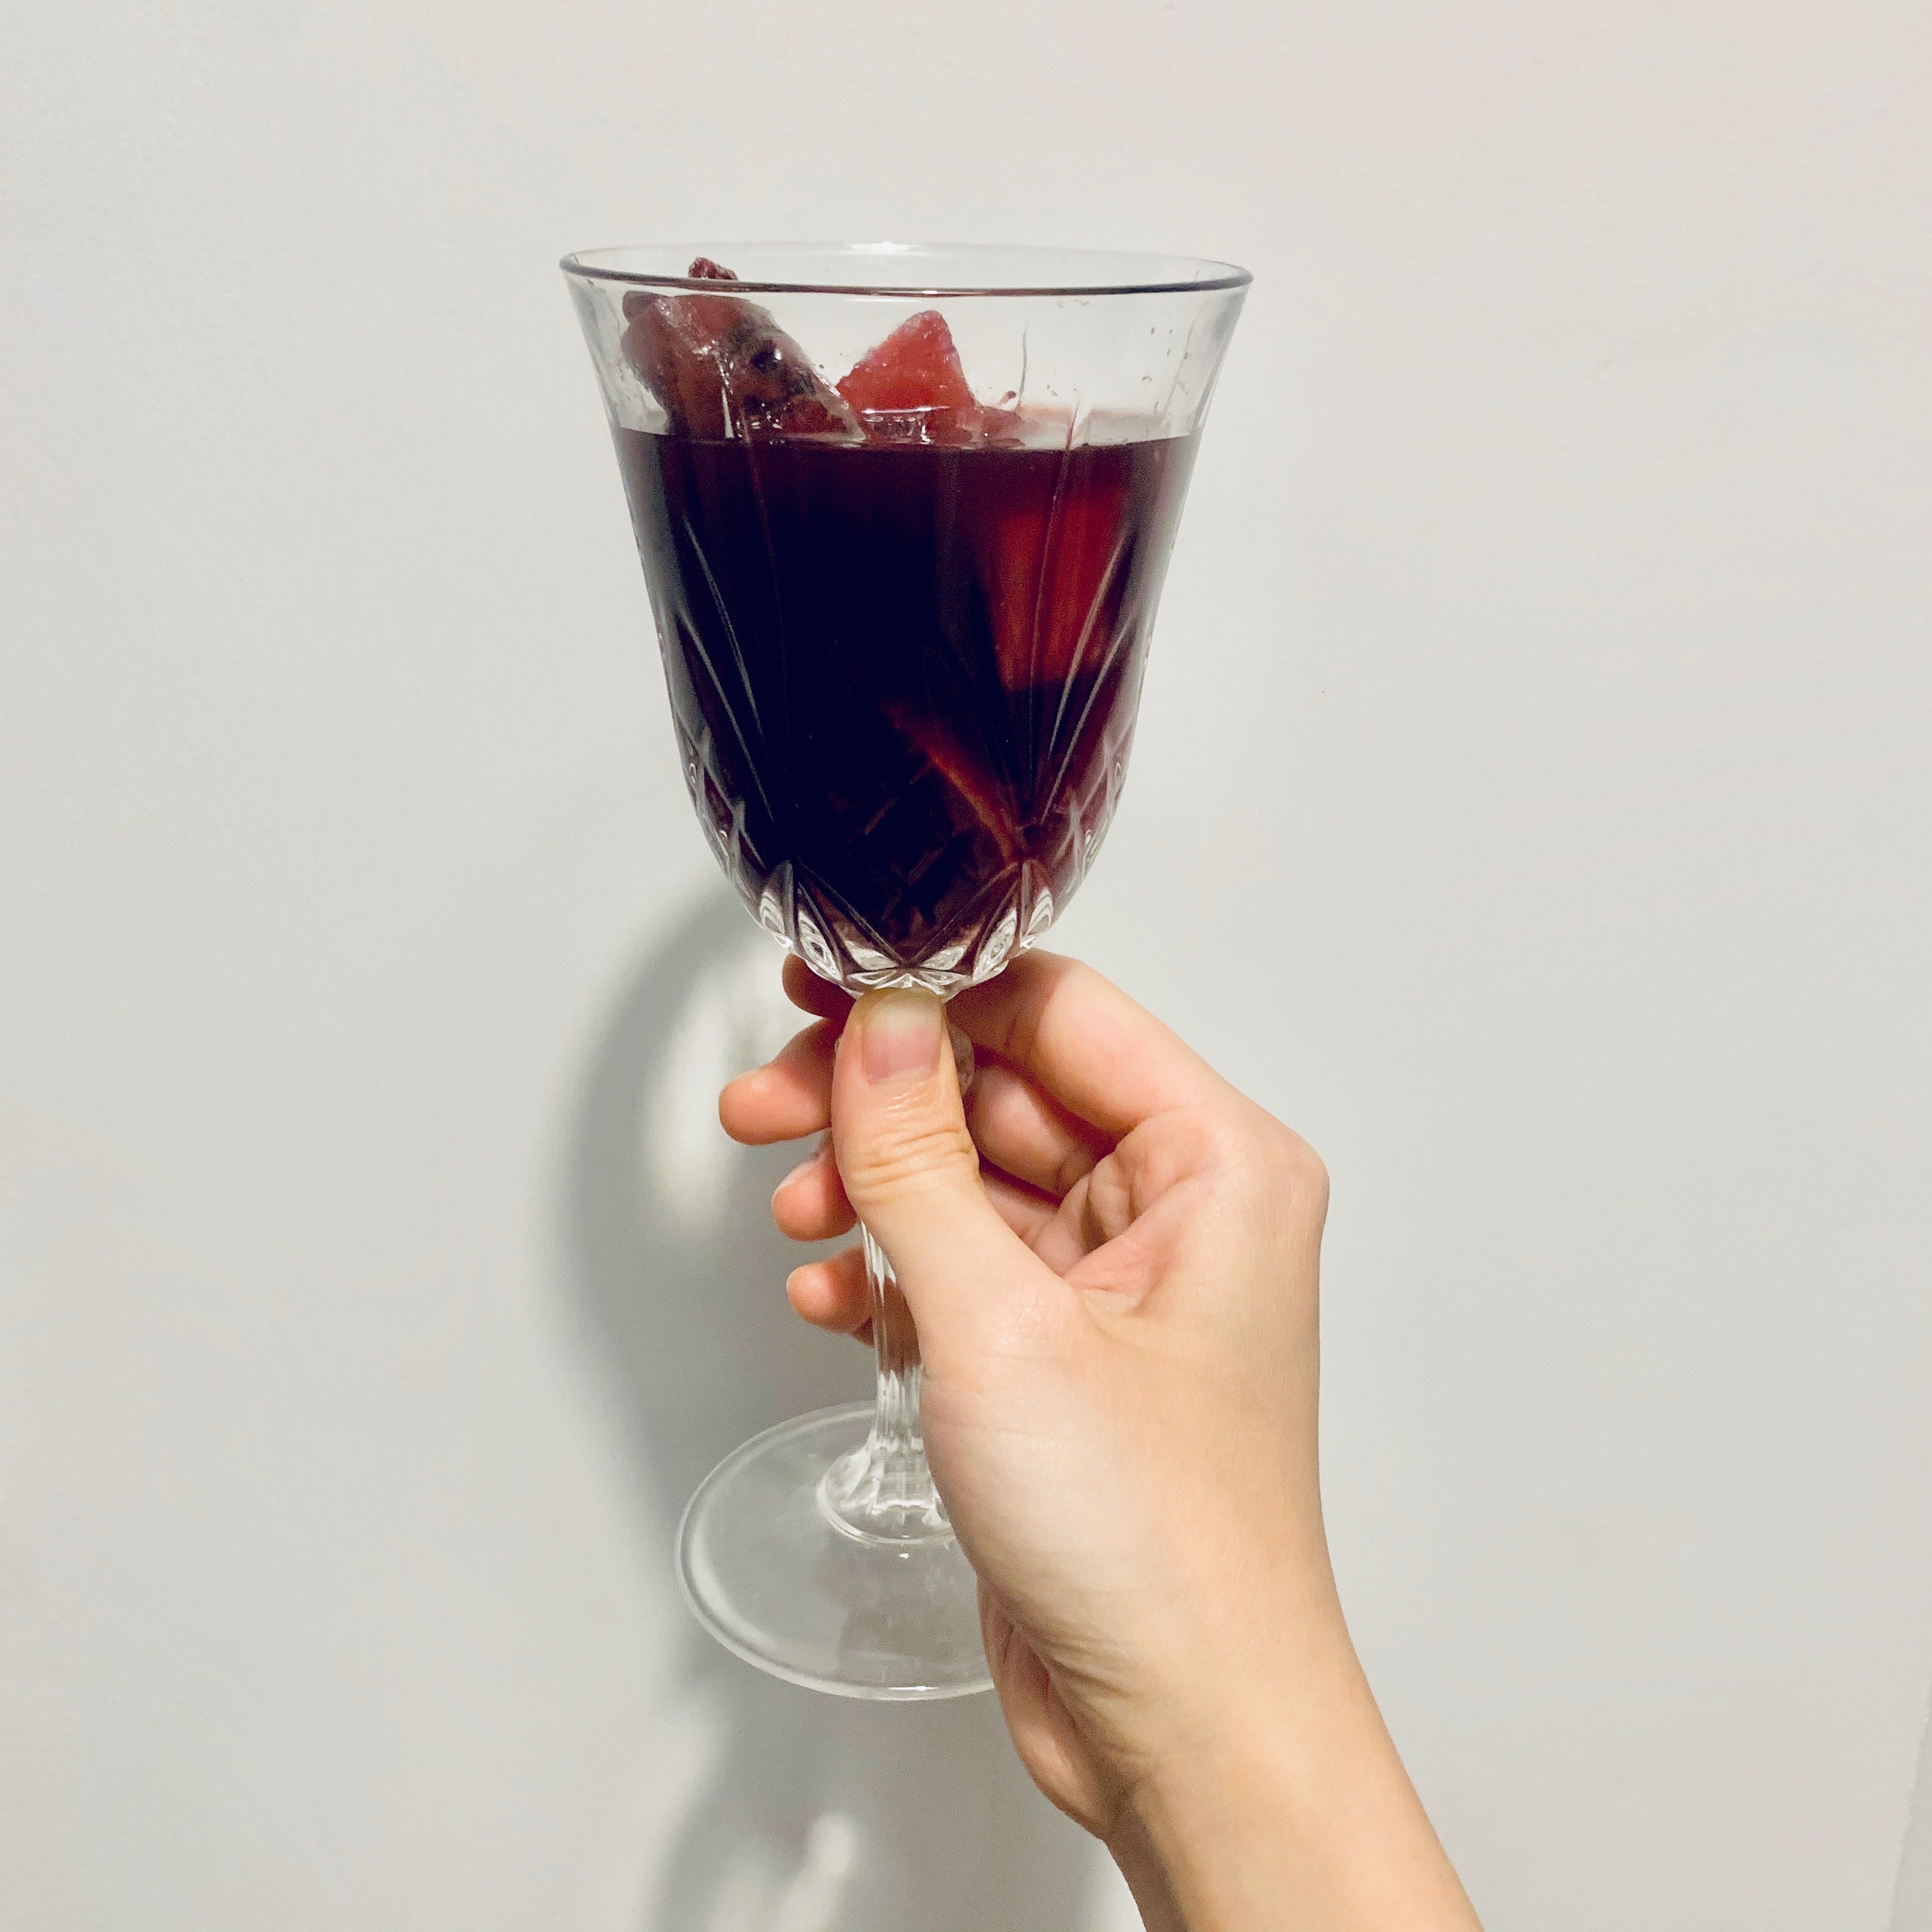 热红酒🍷【Mulled Wine】
【肉桂苹果和红酒】🍎
降温周末的夜晚的做法